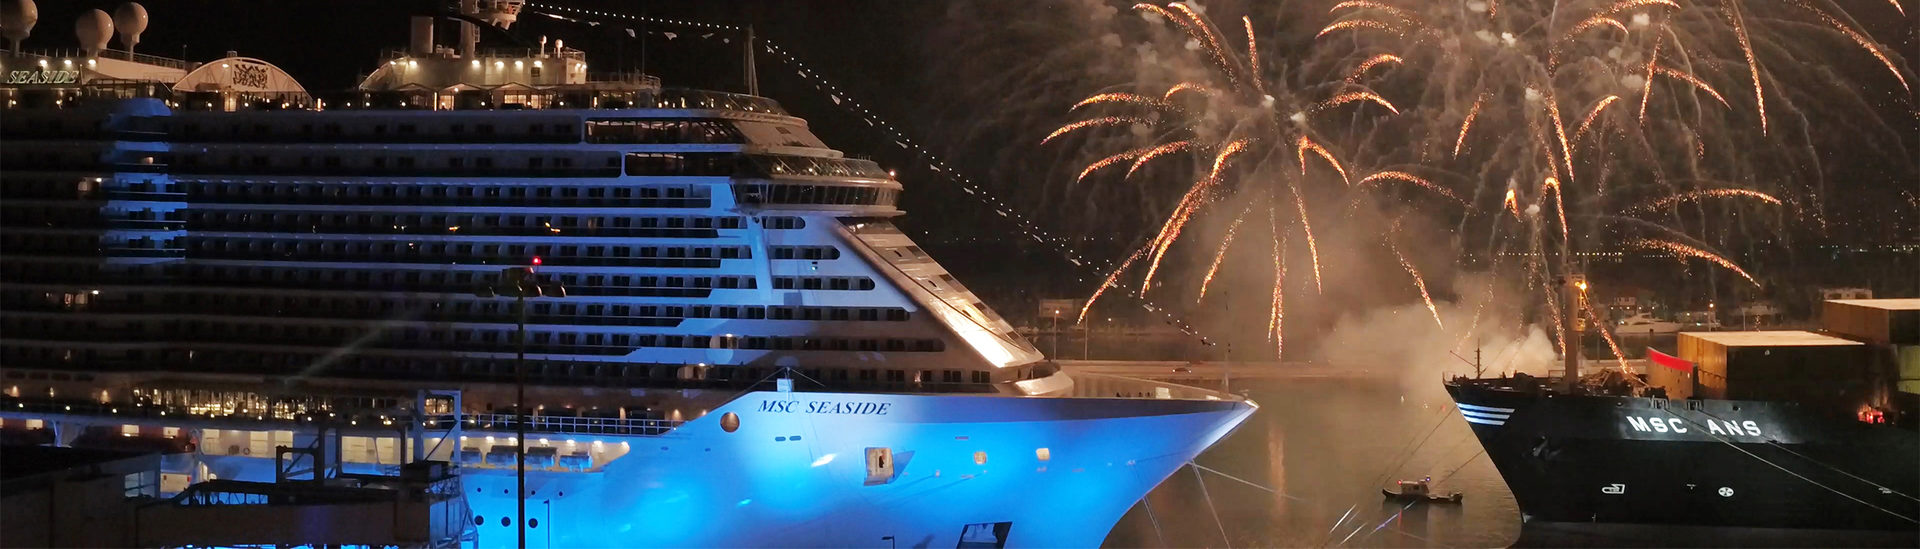 MSC Cruises predstavila svoju novú loď: do vyplávania MSC Seaside zostáva už len pár dní!